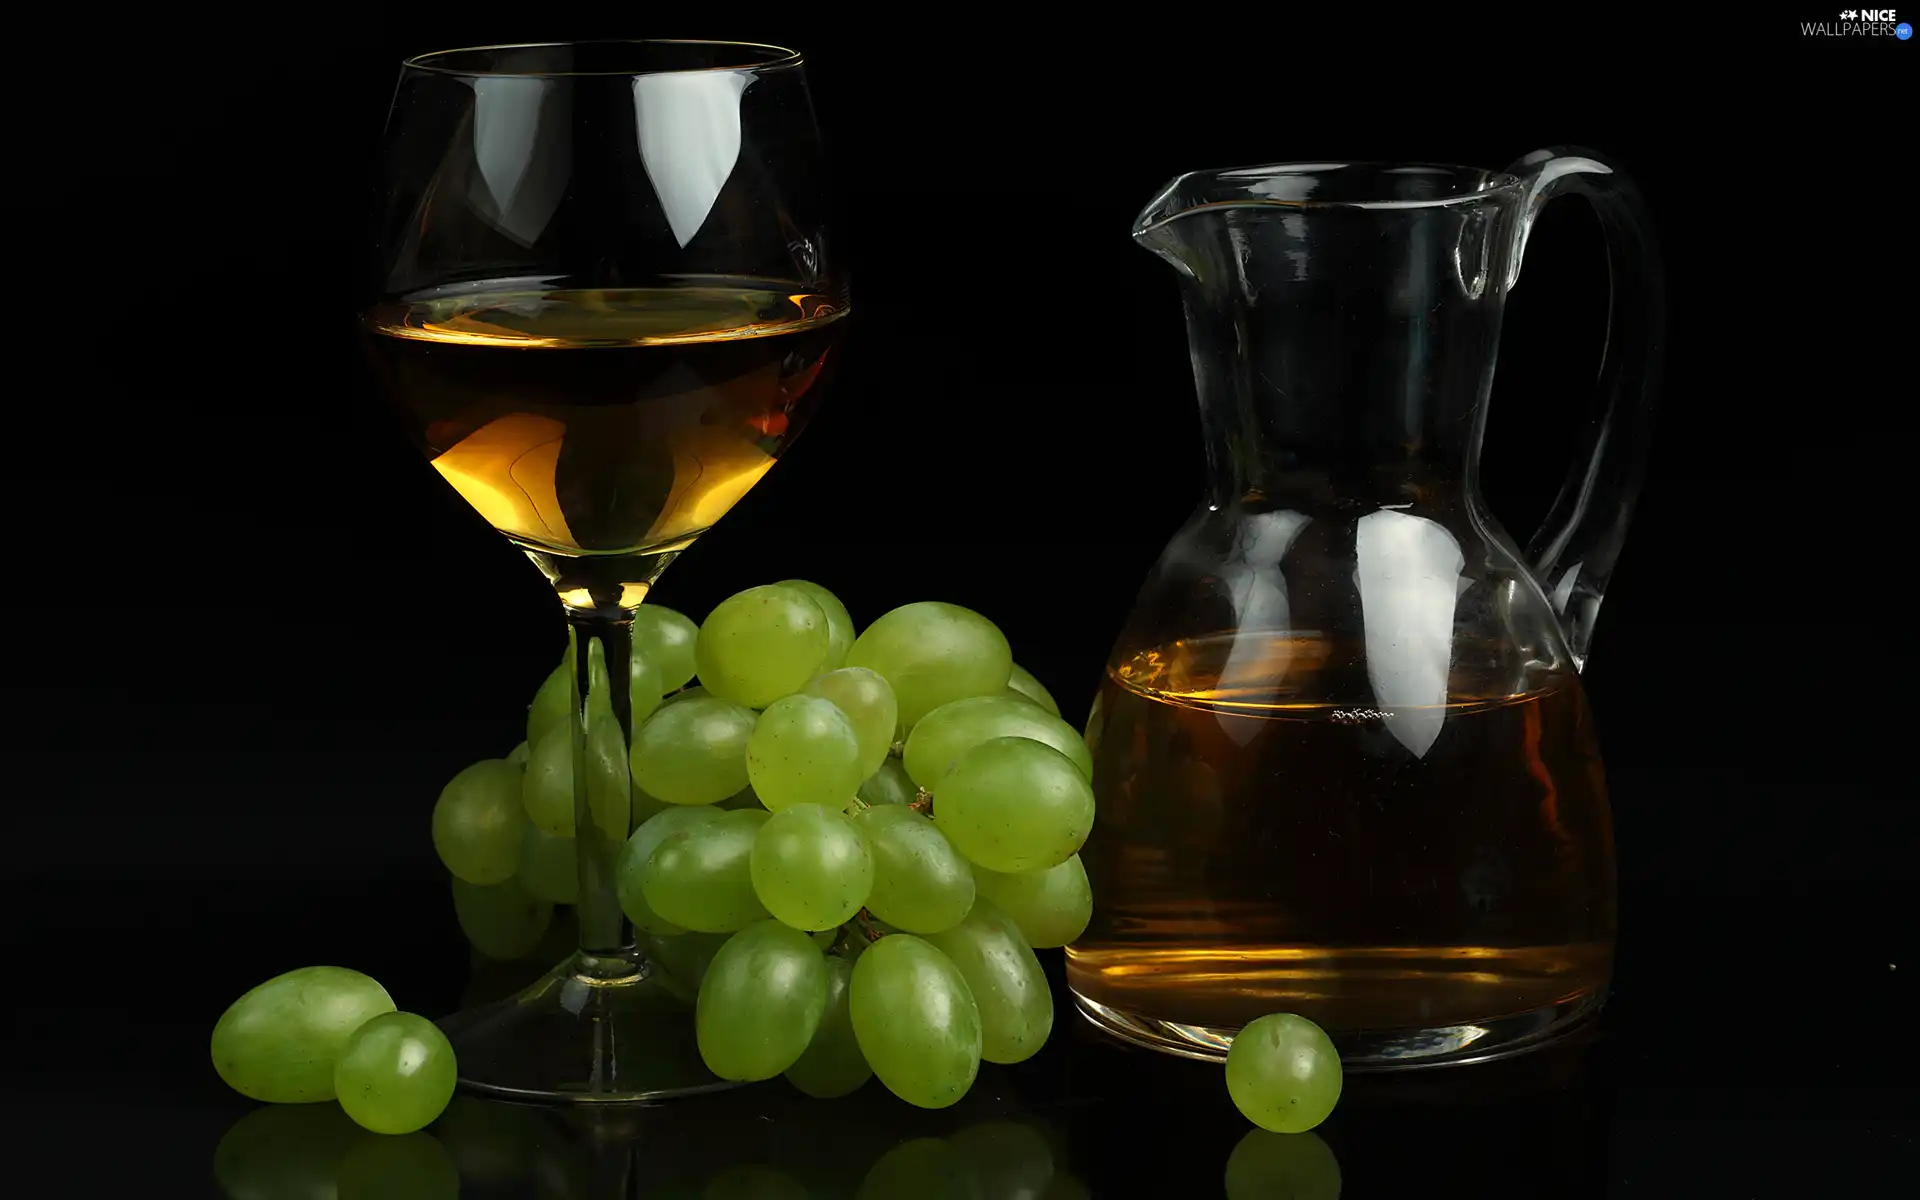 jug, Wine, Grapes, glass, bone